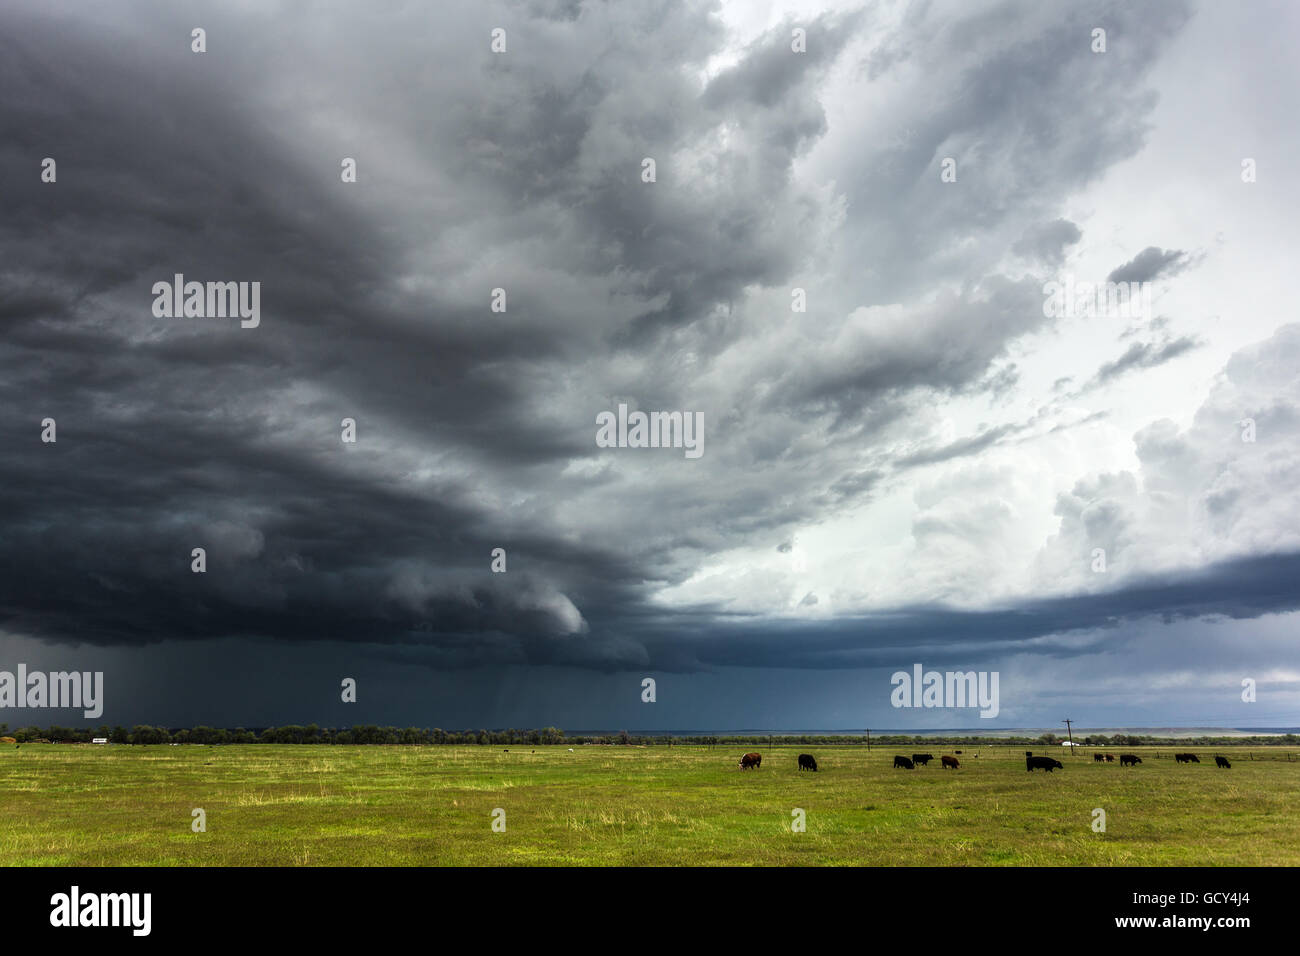 Las vacas pastan bajo un cielo tormentoso cerca de Bridgeport, Nebraska, el 15 de mayo de 2015. Foto de stock